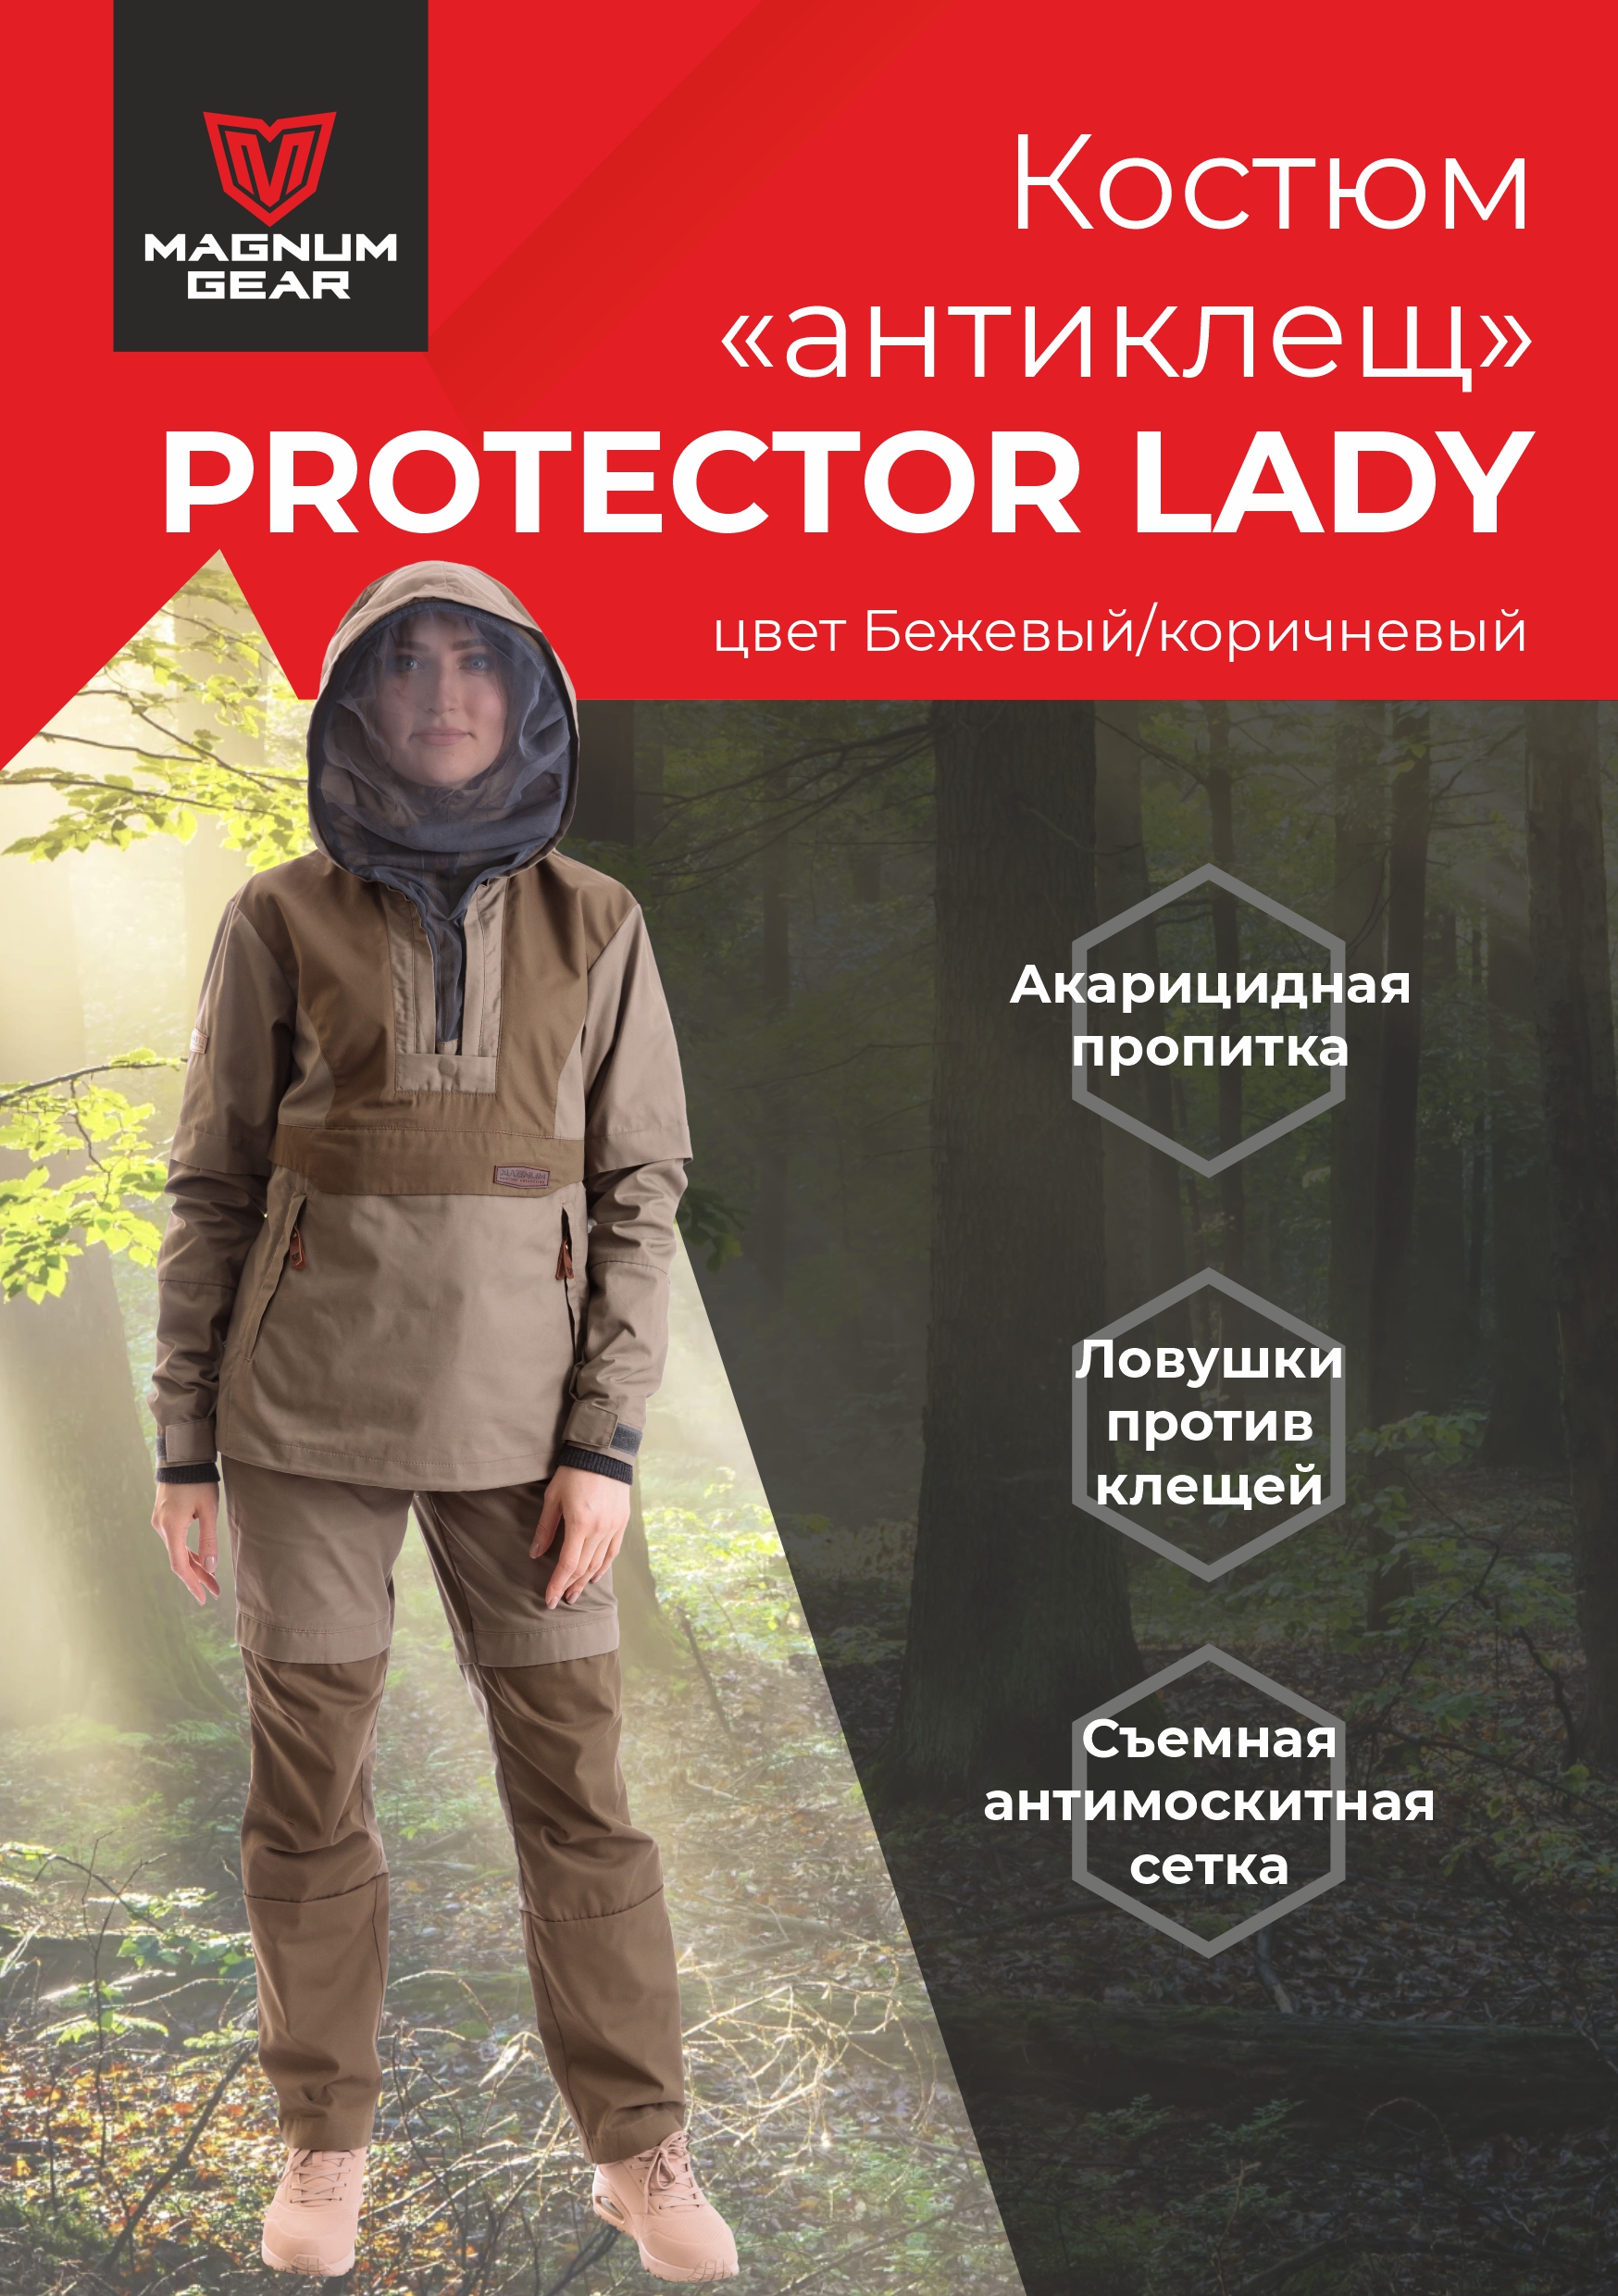 Костюм женский Magnum Gear, PROTECTOR LADY, бежевый/коричневый, размер S, рост 170-176